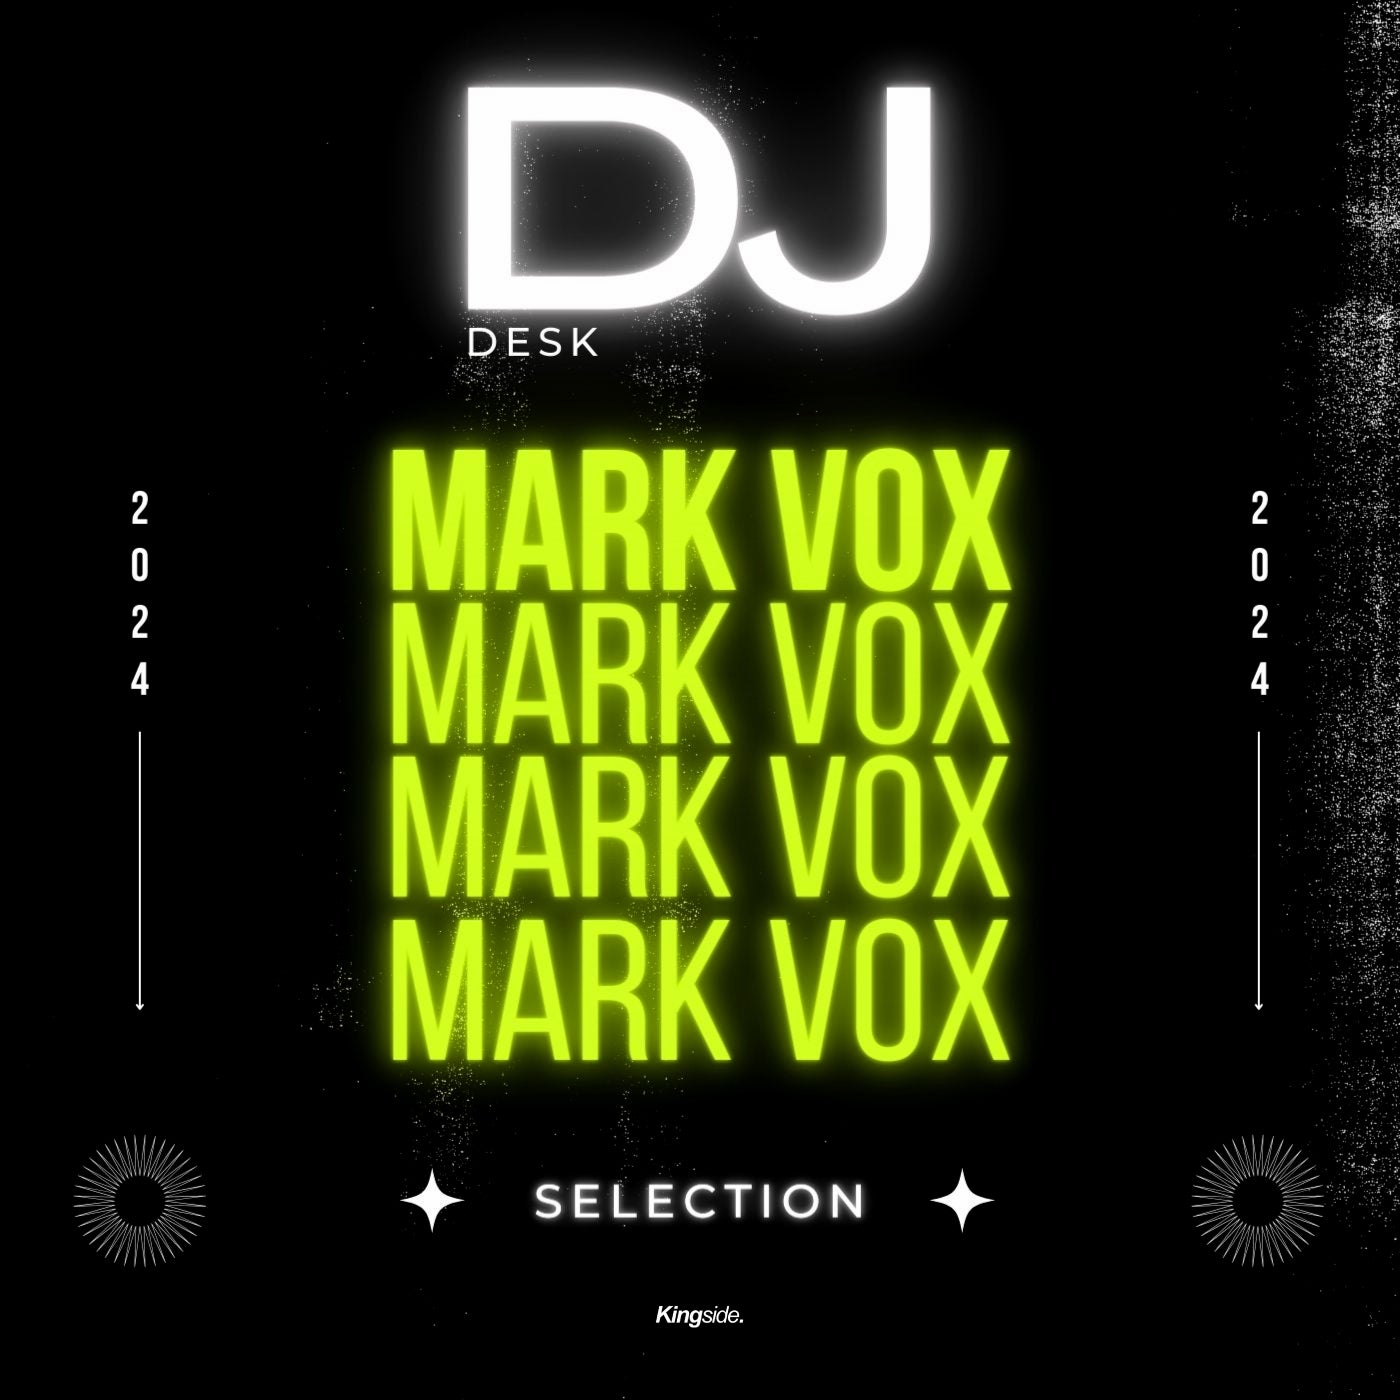 DJ Desk Selection - Mark Vox